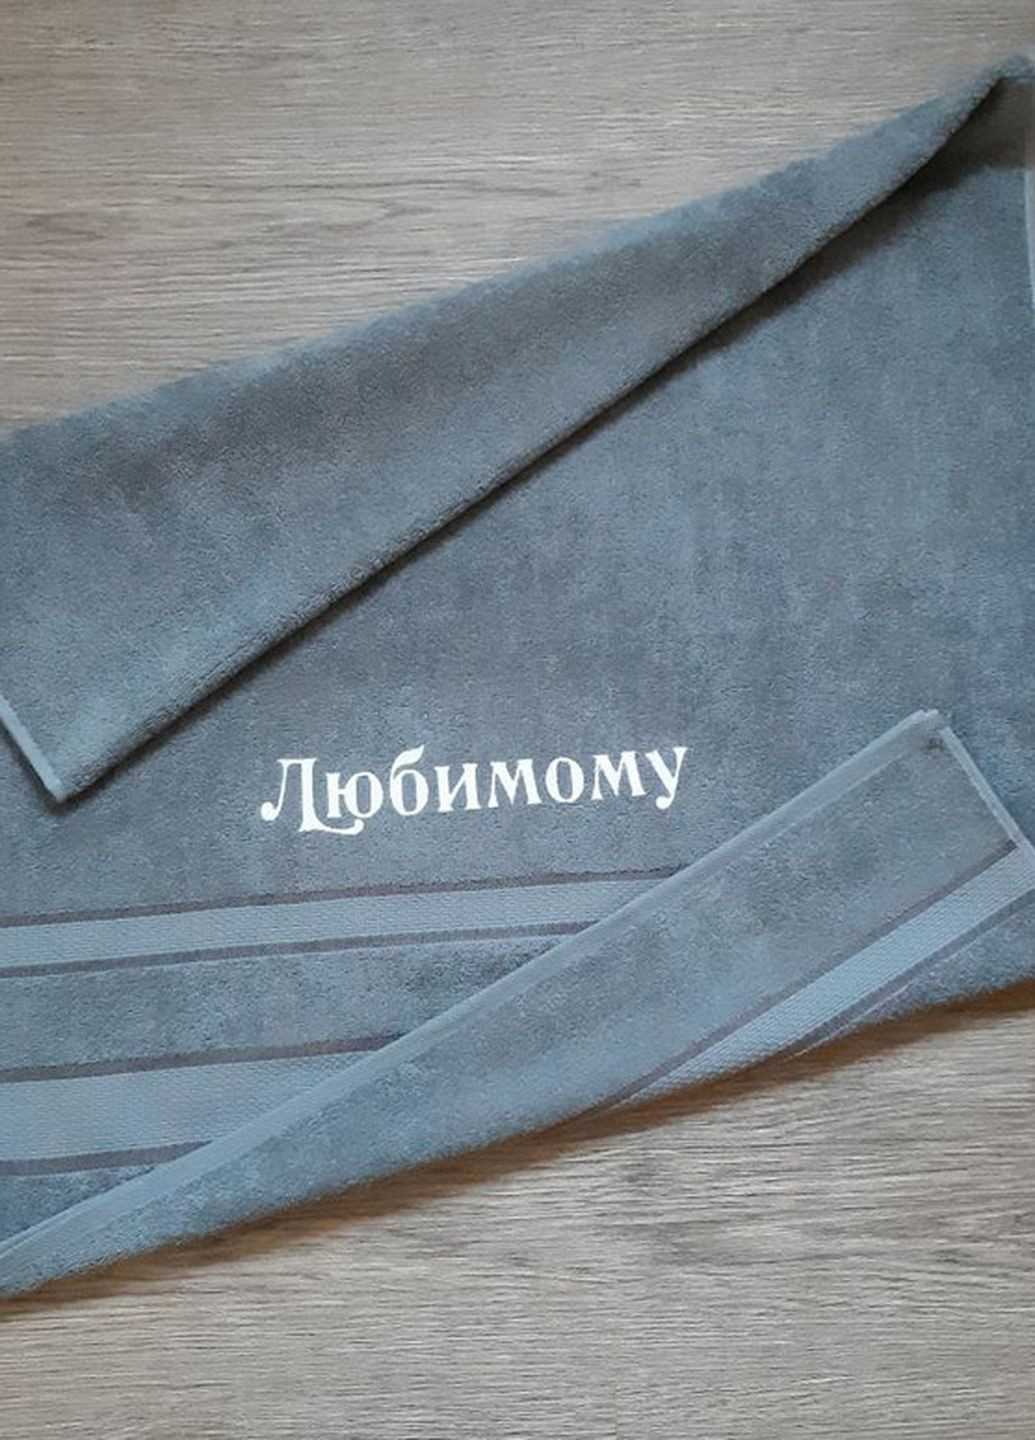 No Brand полотенце с вышивкой махровое банное 70*140 серый любимому мужу парню 00265 однотонный серый производство - Украина